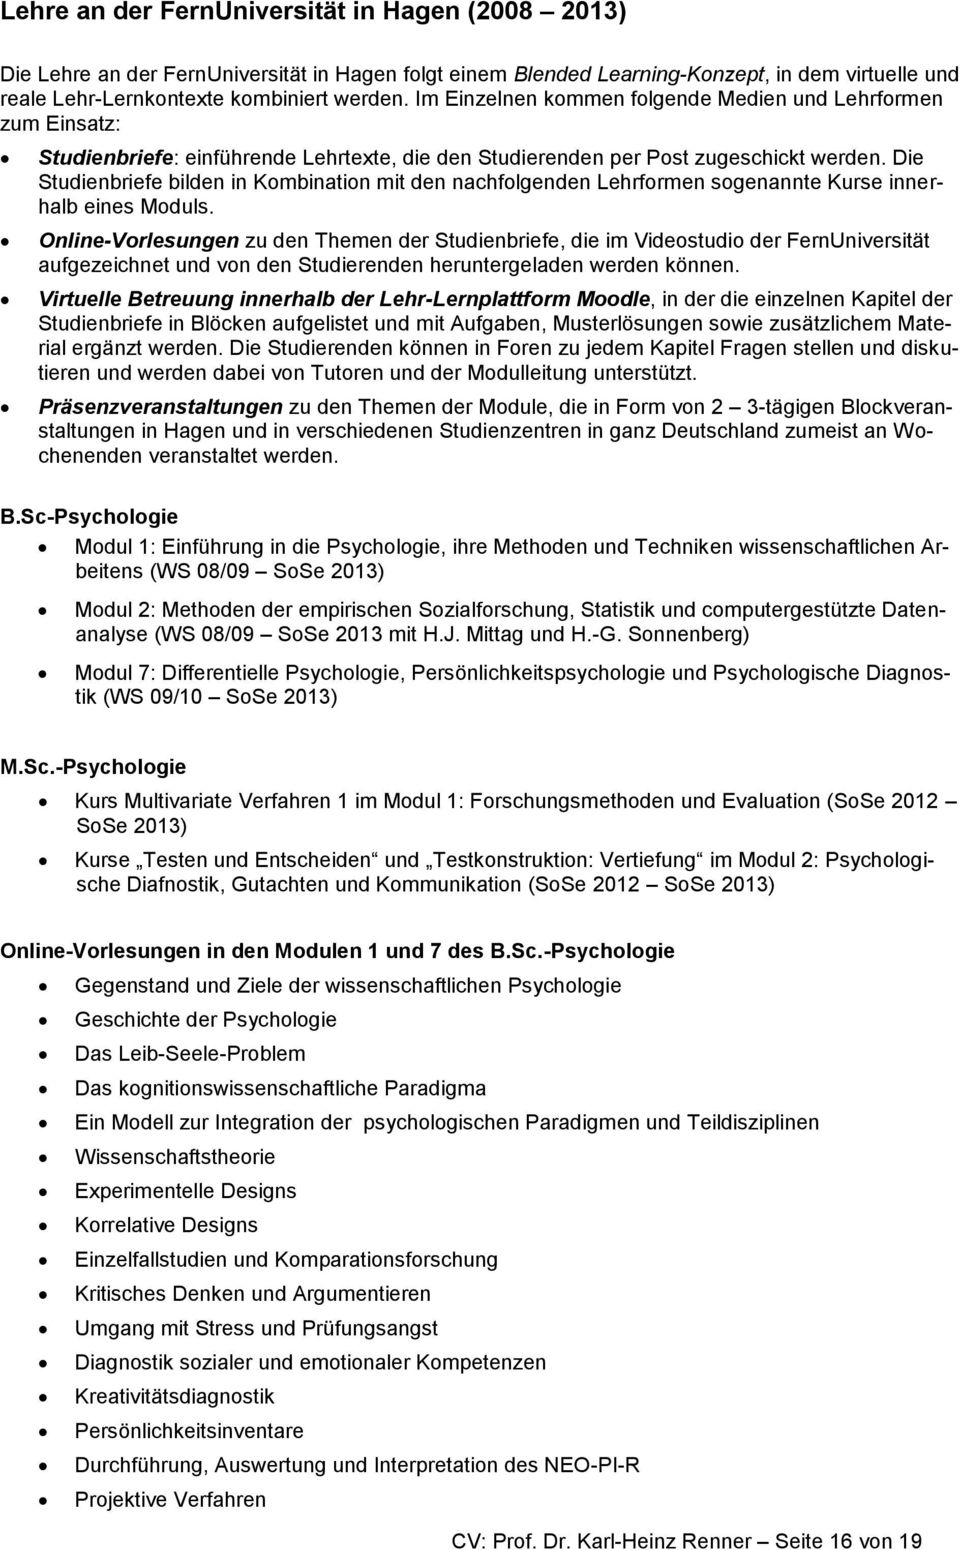 curriculum vitae - prof  dr  karl-heinz renner